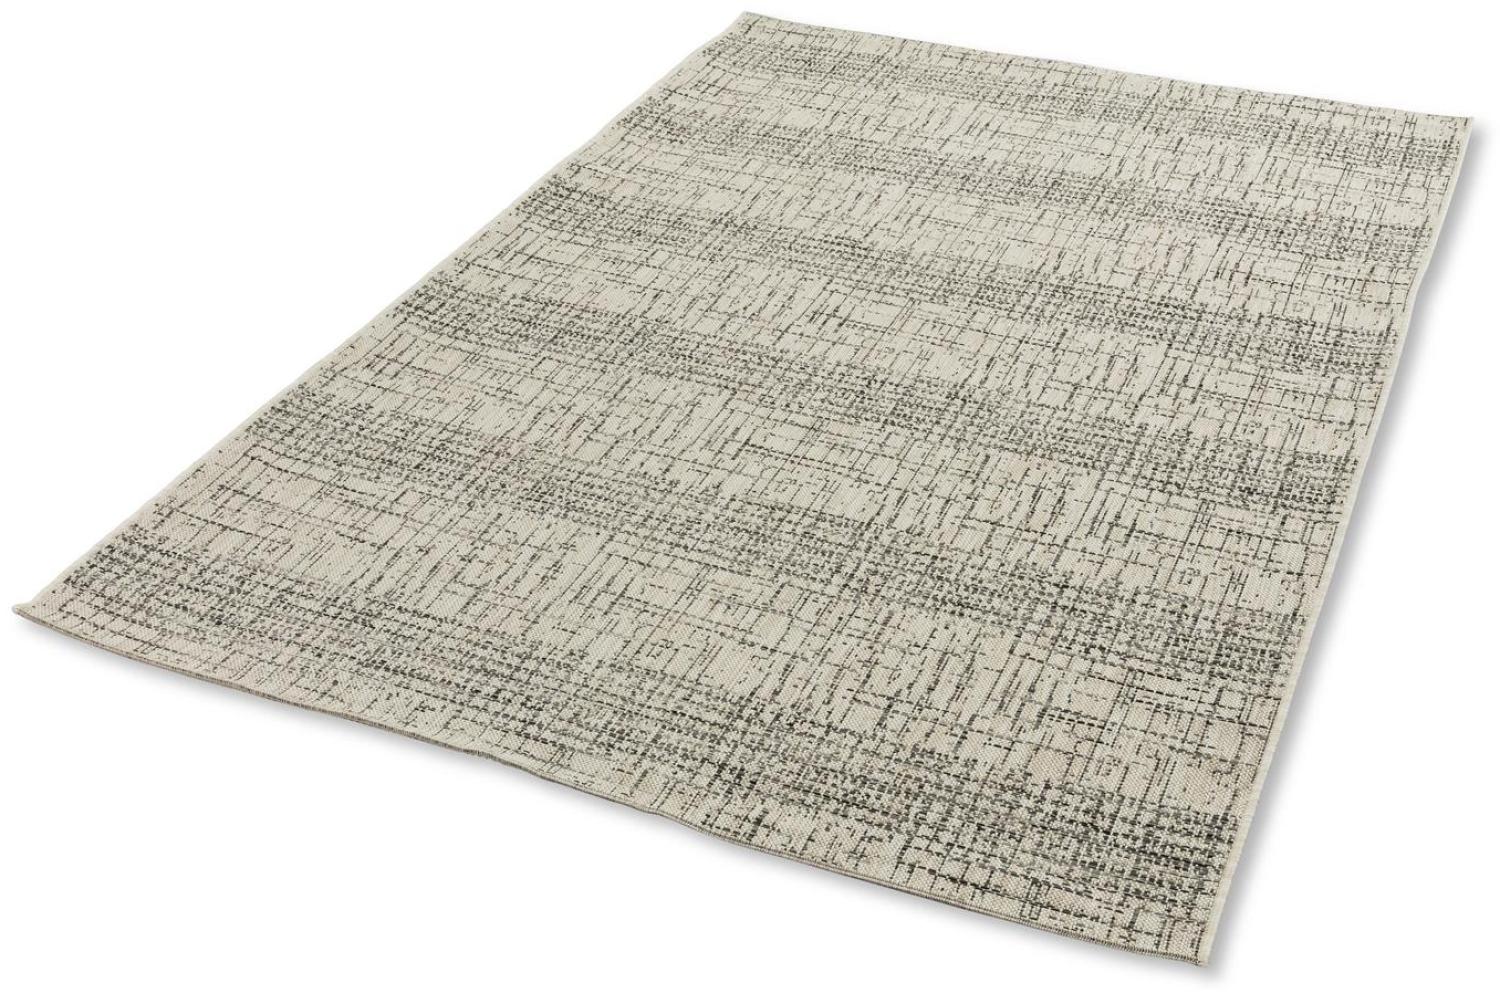 Teppich in Sand aus 100% Polypropylen - 290x200x0,5cm (LxBxH) Bild 1